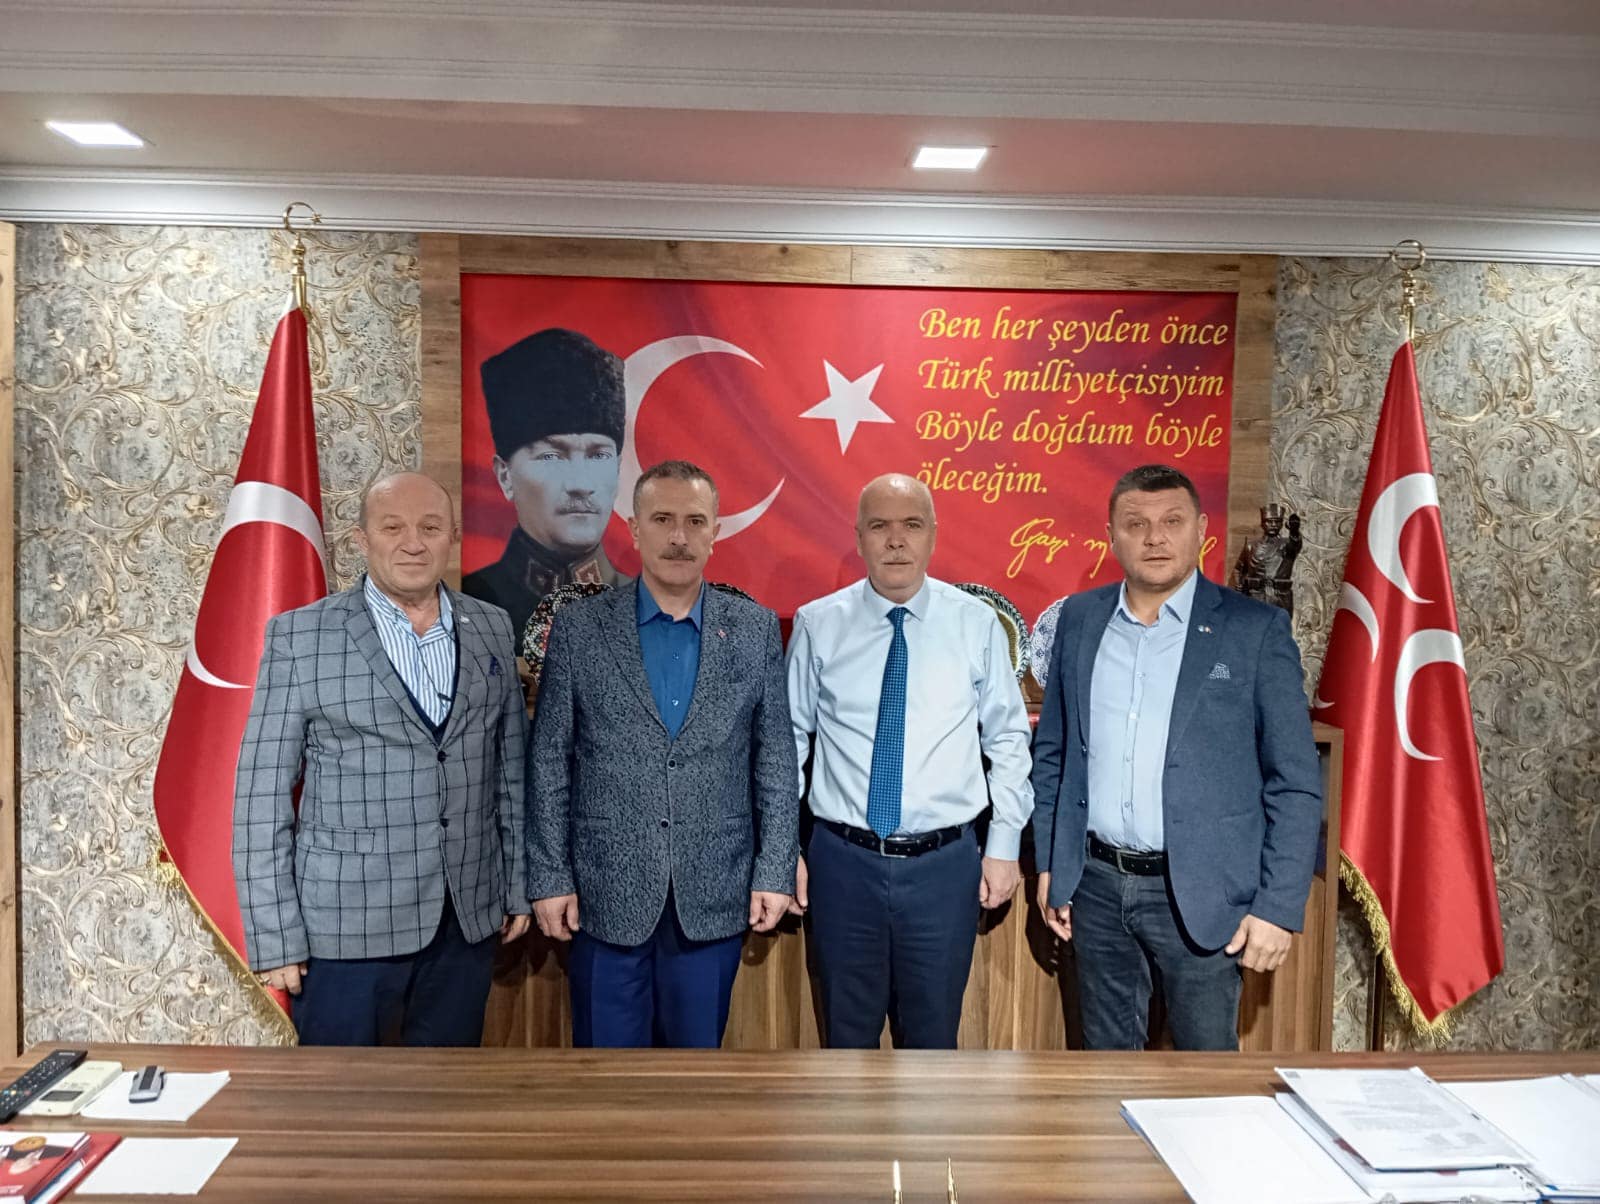 Eskişehir'de MHP İl Başkanlığı'na nezaket ziyareti gerçekleştirildi.